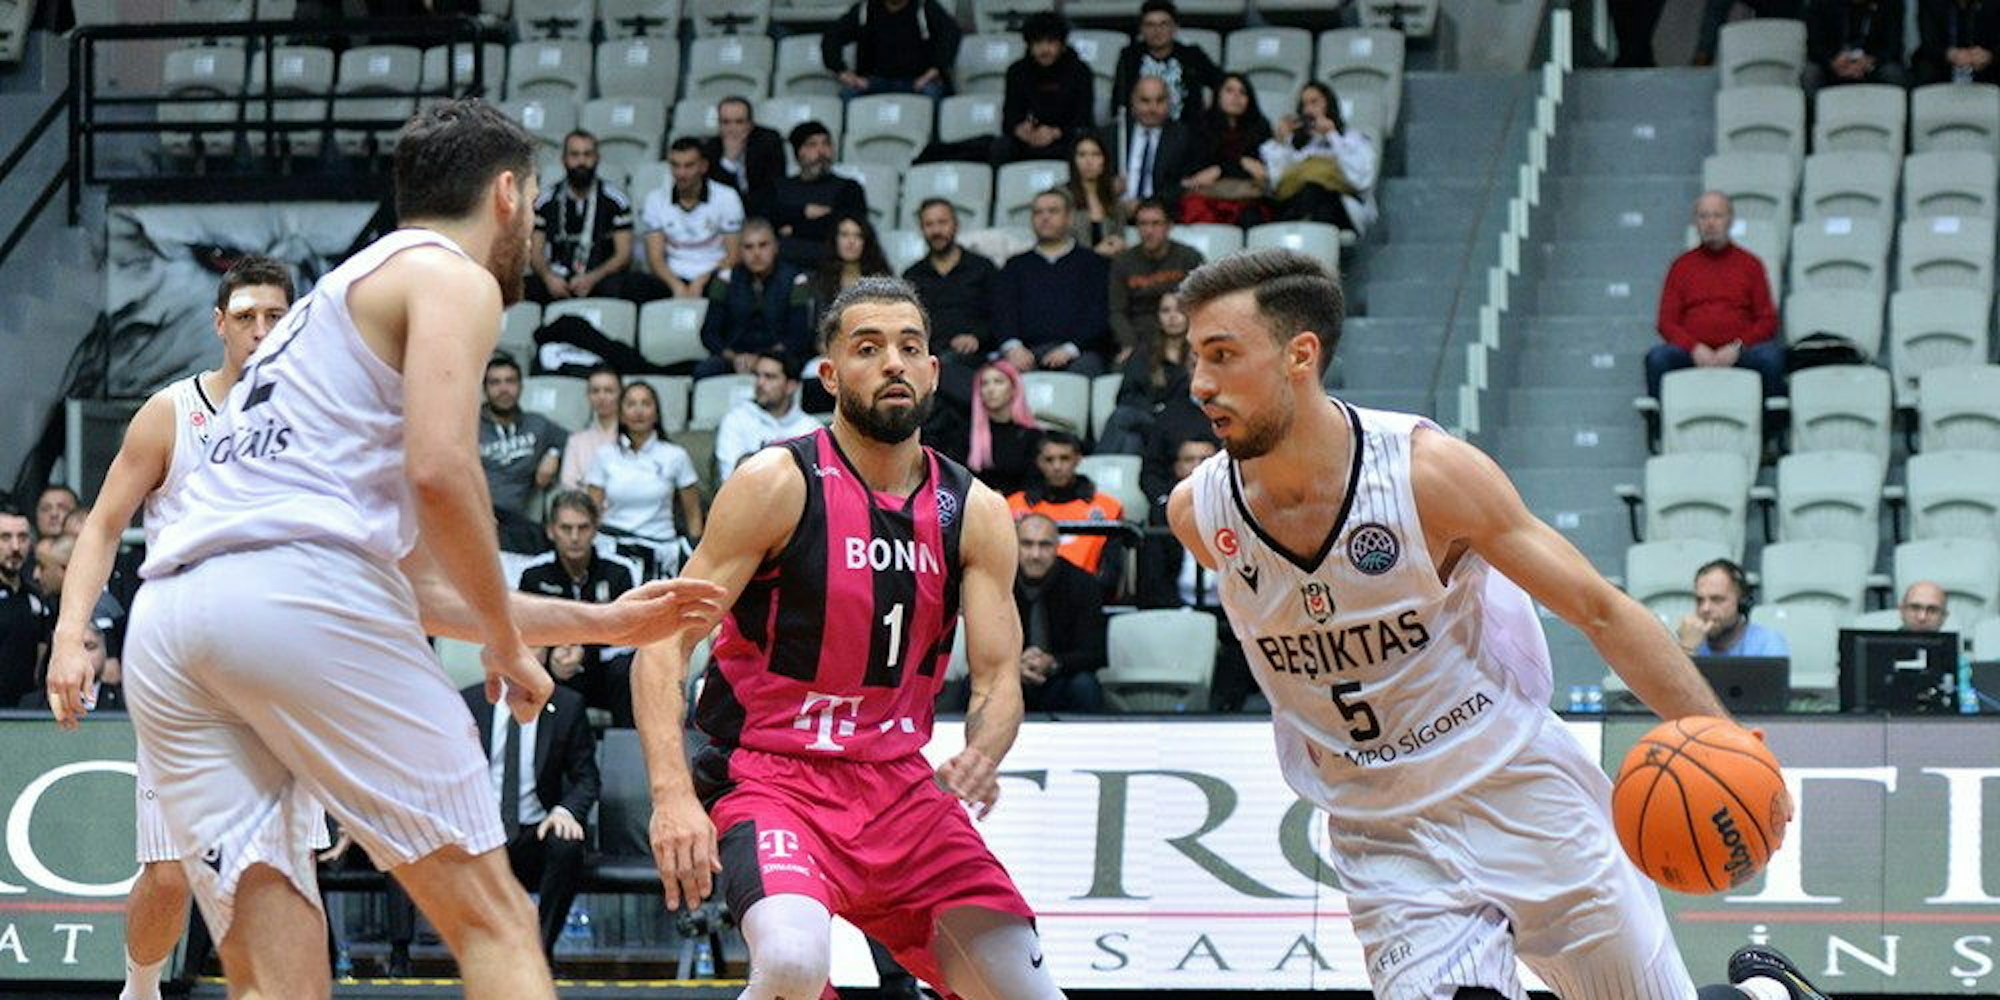 Dem deutschen Nationalspieler Ismet Akpinar (r.) gelang zwölf Sekunden vor Schluss der entscheidende Korb für Besiktas. In der Mitte Baskets-Spieler Joshiko Saibou.